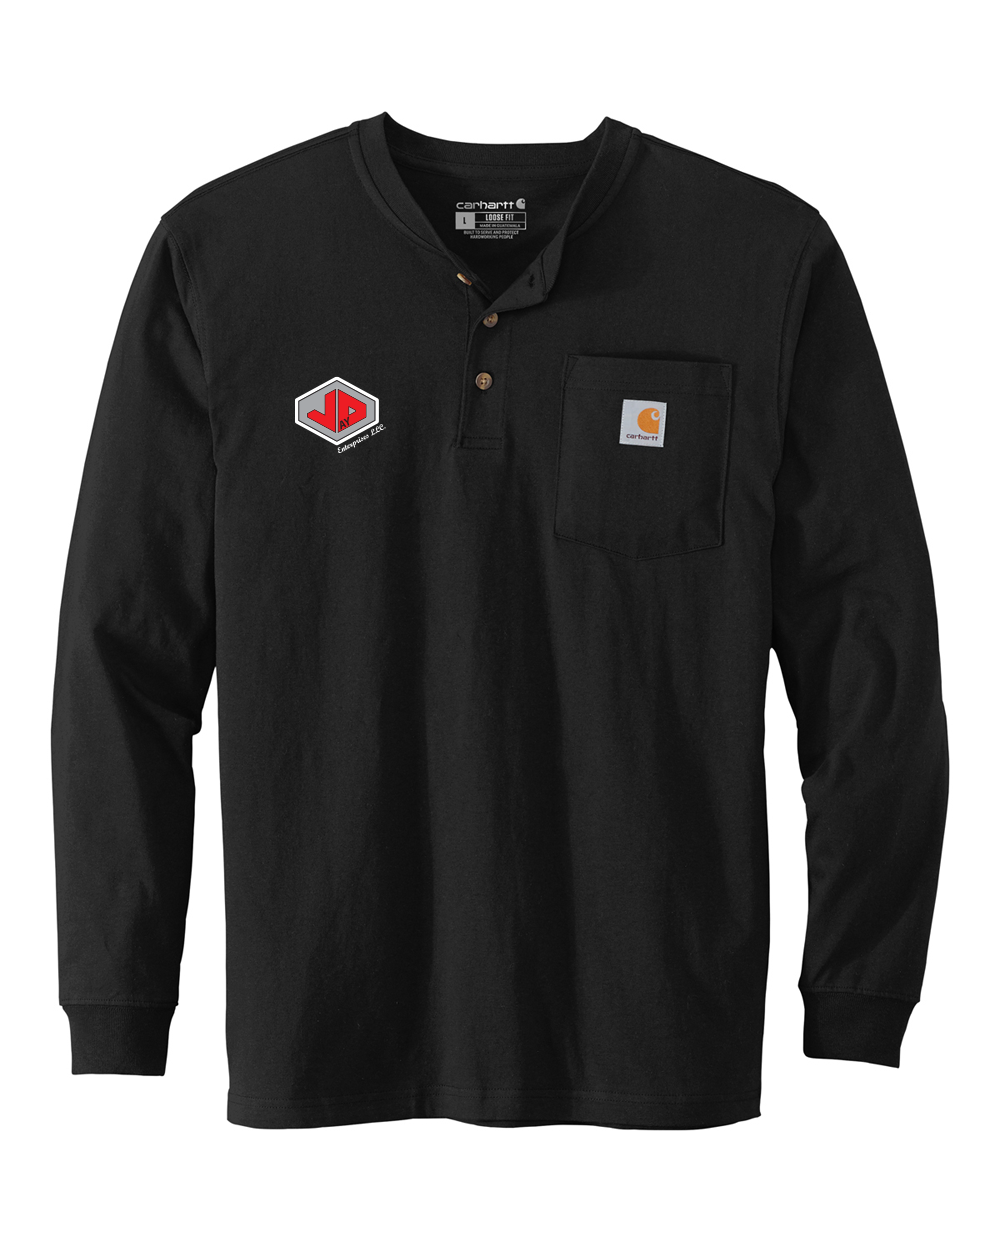 Jay D Enterprises - Carhartt Long Sleeve Henley T-Shirt